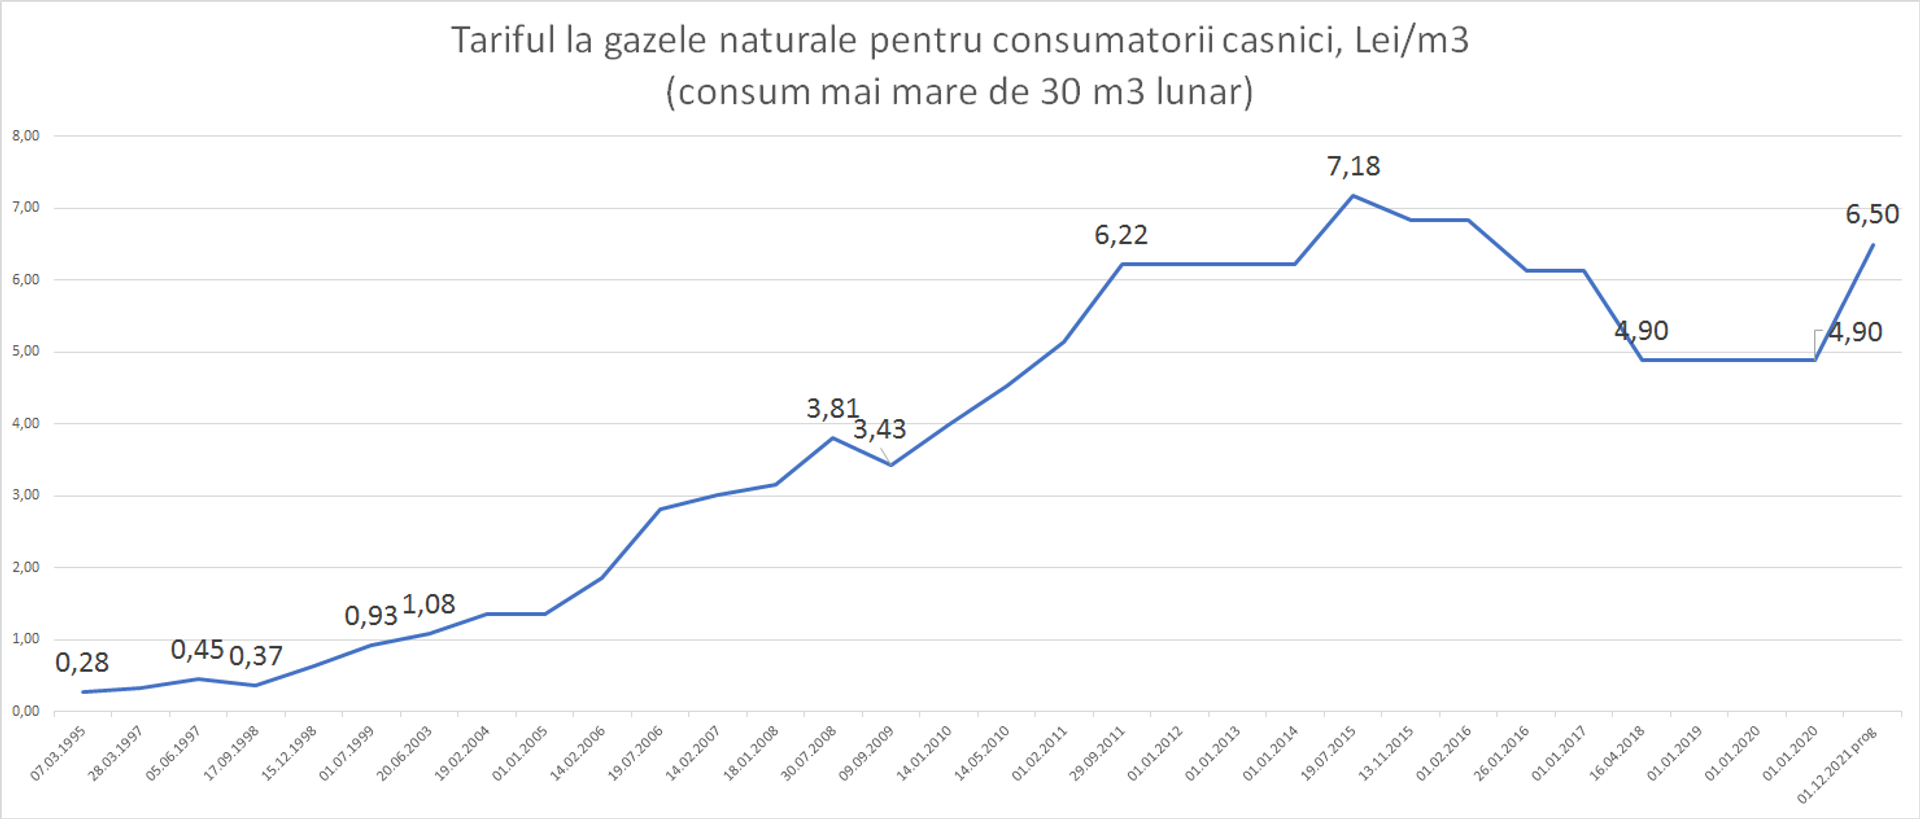 Тарифы и цены на газ в Молдове - Sputnik Молдова, 1920, 01.11.2021